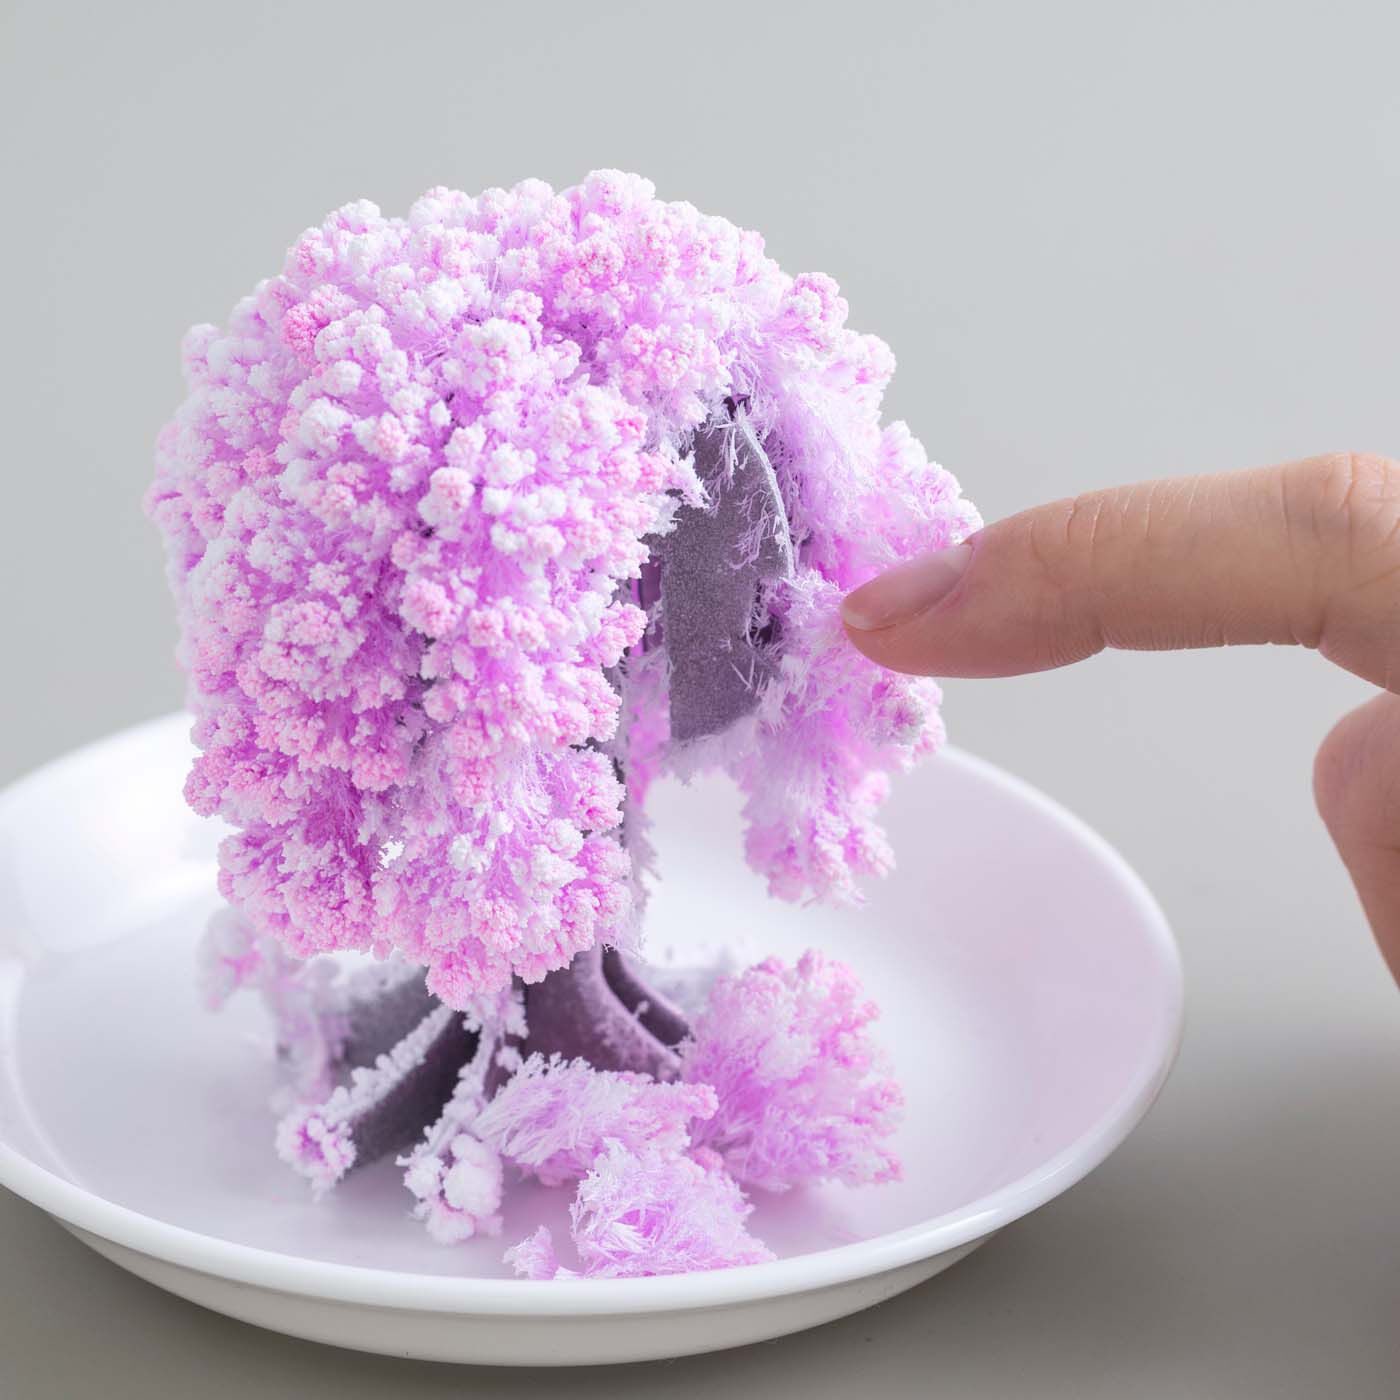 SeeMONO|デスクに咲く不思議なペーパーオブジェ〈桜〉|指で触ると壊れてしまう儚さですが、お皿に水を足すことで3～5回ほど繰り返し咲かせることができます。